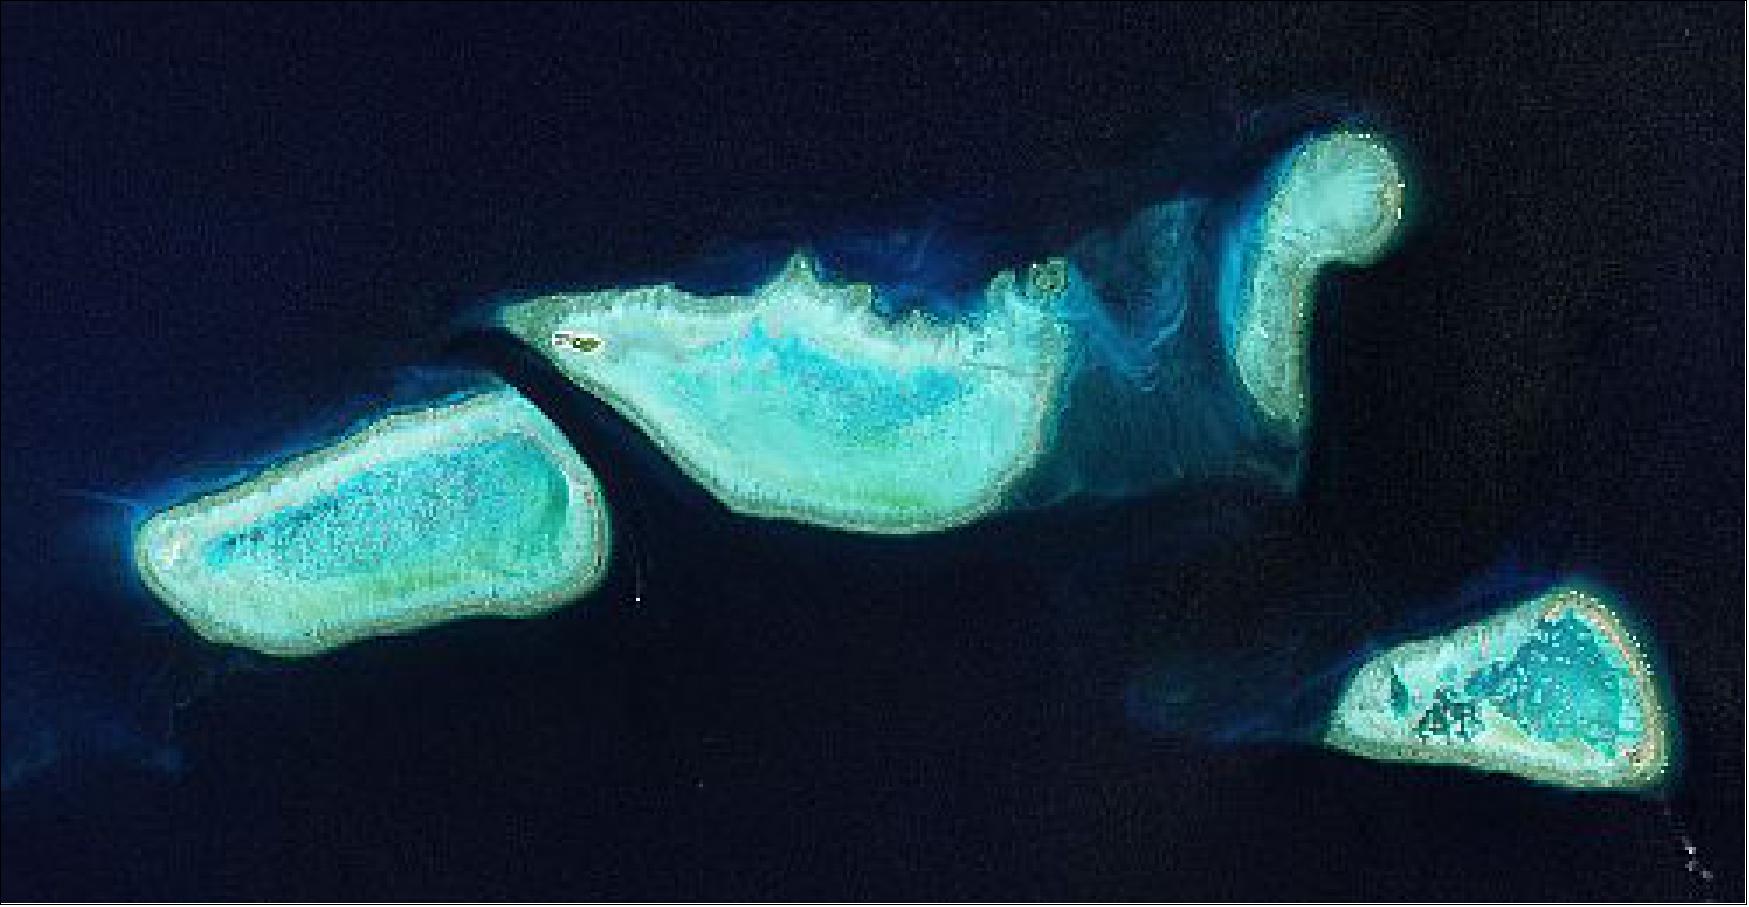 Image of Heron Island, Great Barrier Reef